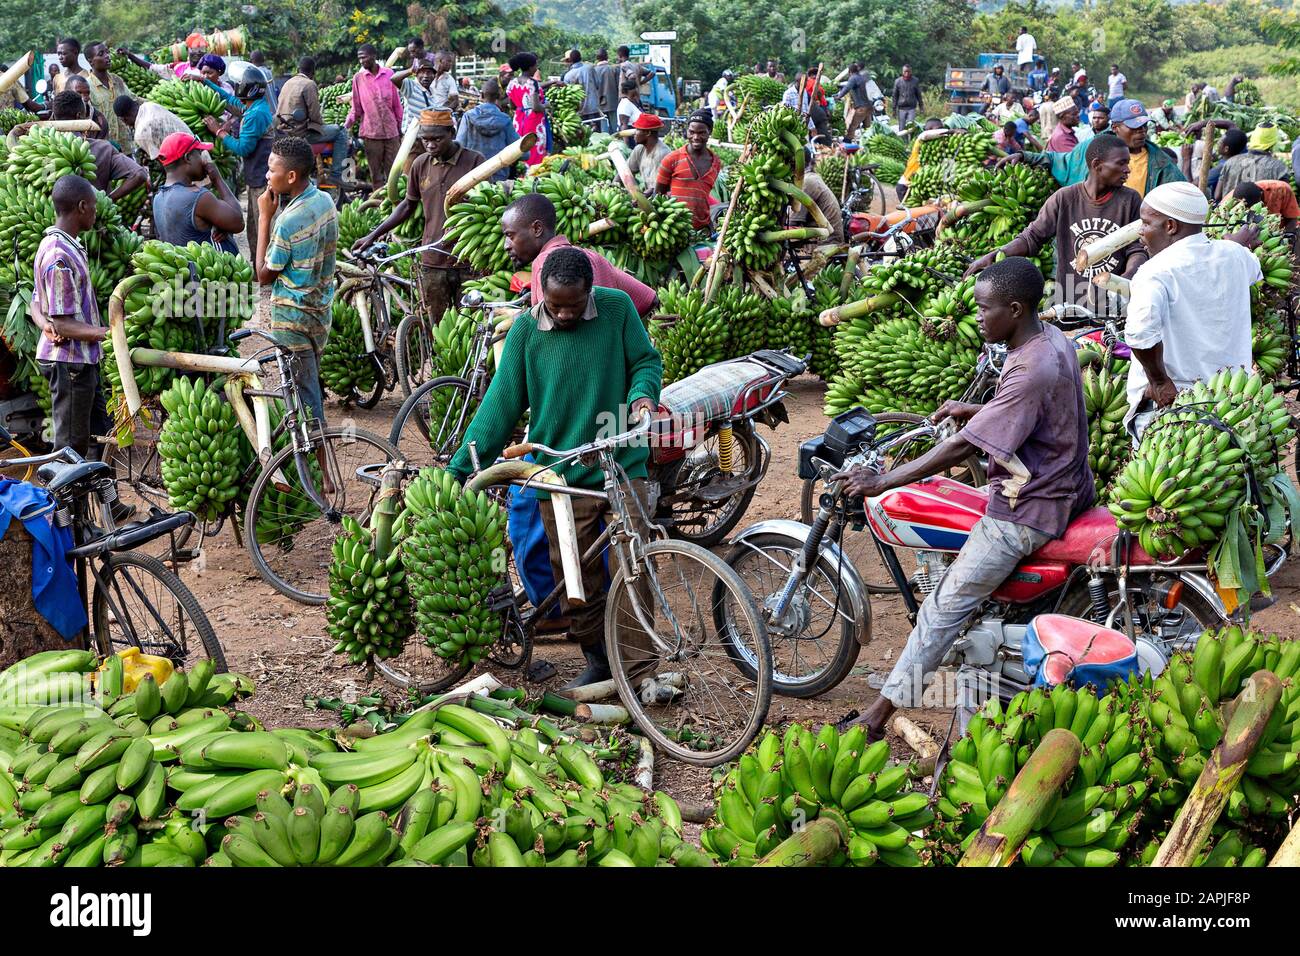 Banana market in Kitwa, Uganda Stock Photo